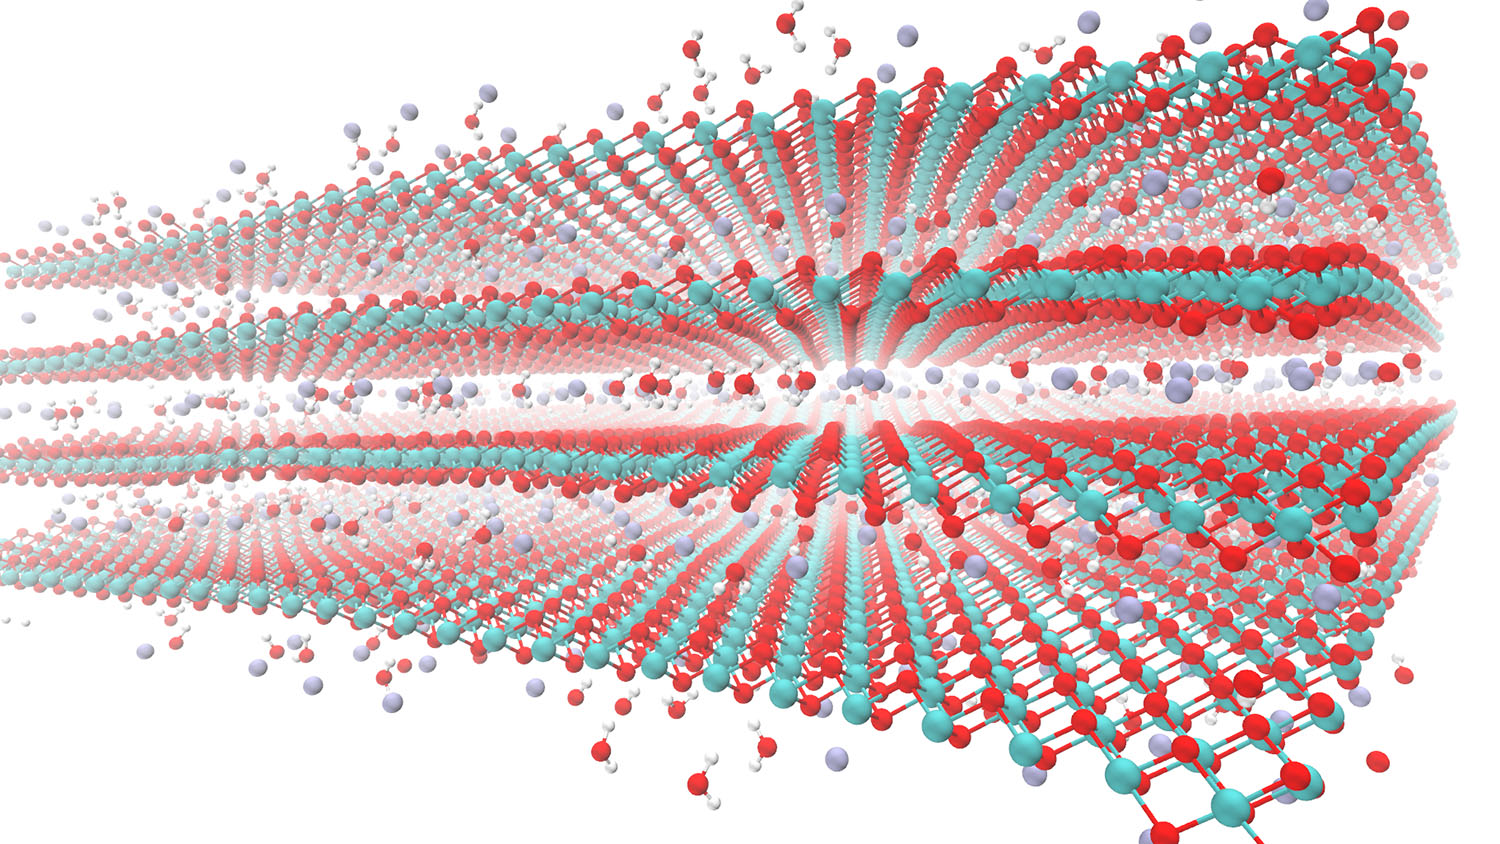 这张图片显示了水分子(红色的氧分子，两个白色的氢分子)和钾离子(深蓝色/淡紫色)在外层和层间的物质水钠石。